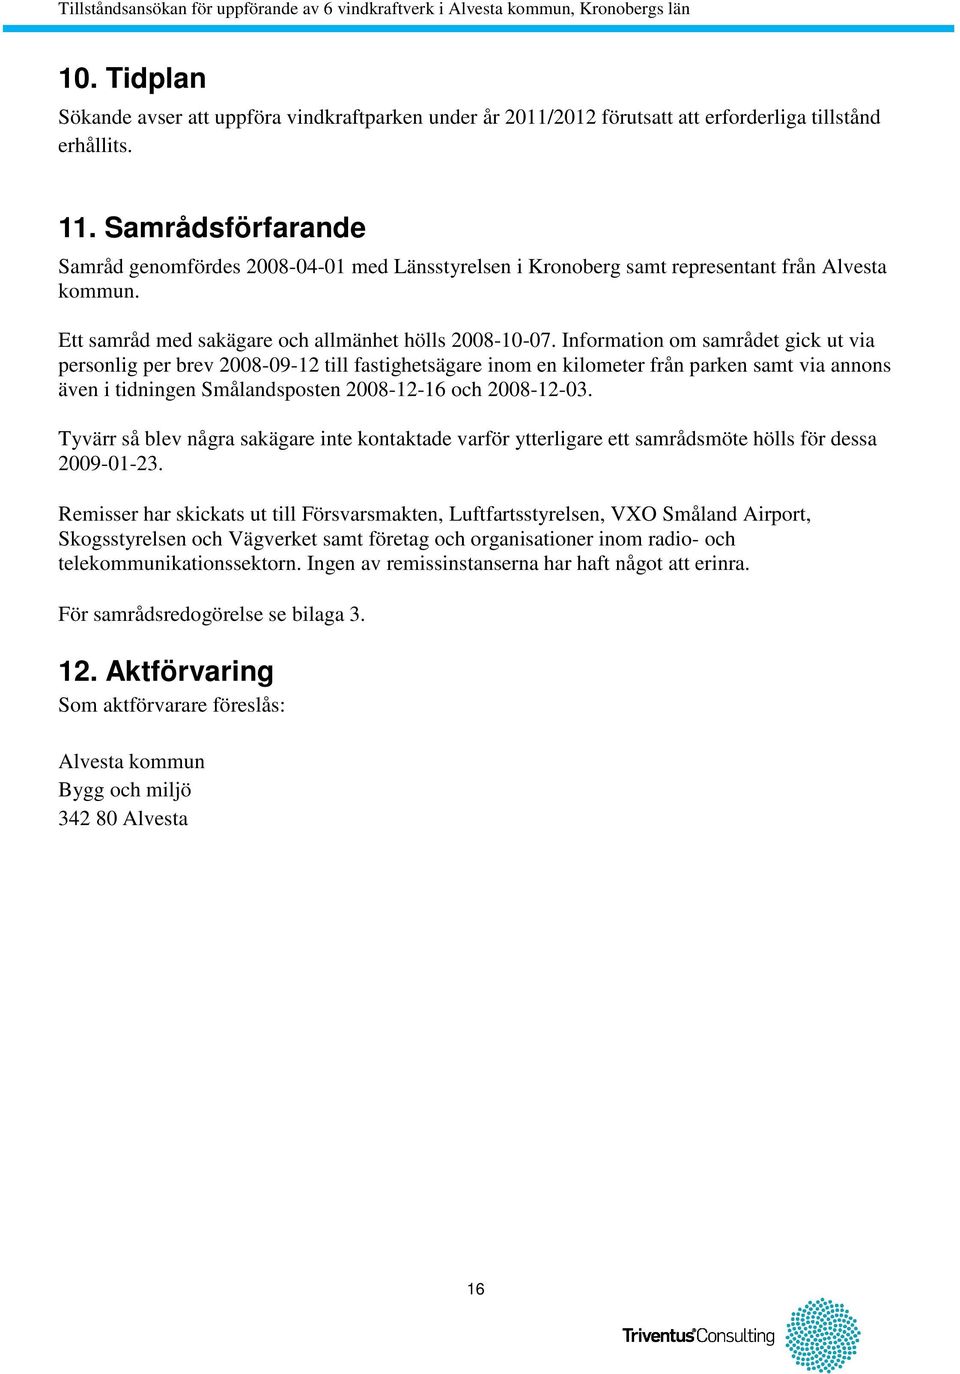 Information om samrådet gick ut via personlig per brev 2008-09-12 till fastighetsägare inom en kilometer från parken samt via annons även i tidningen Smålandsposten 2008-12-16 och 2008-12-03.